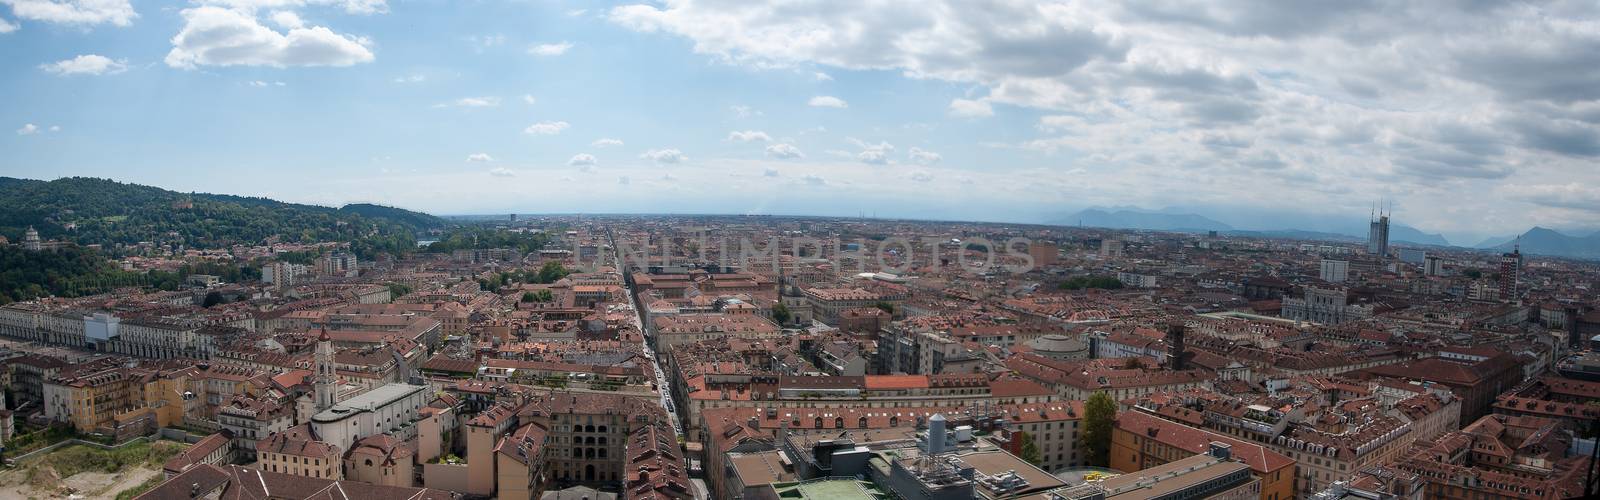 Torino panorama from cinema museum tower